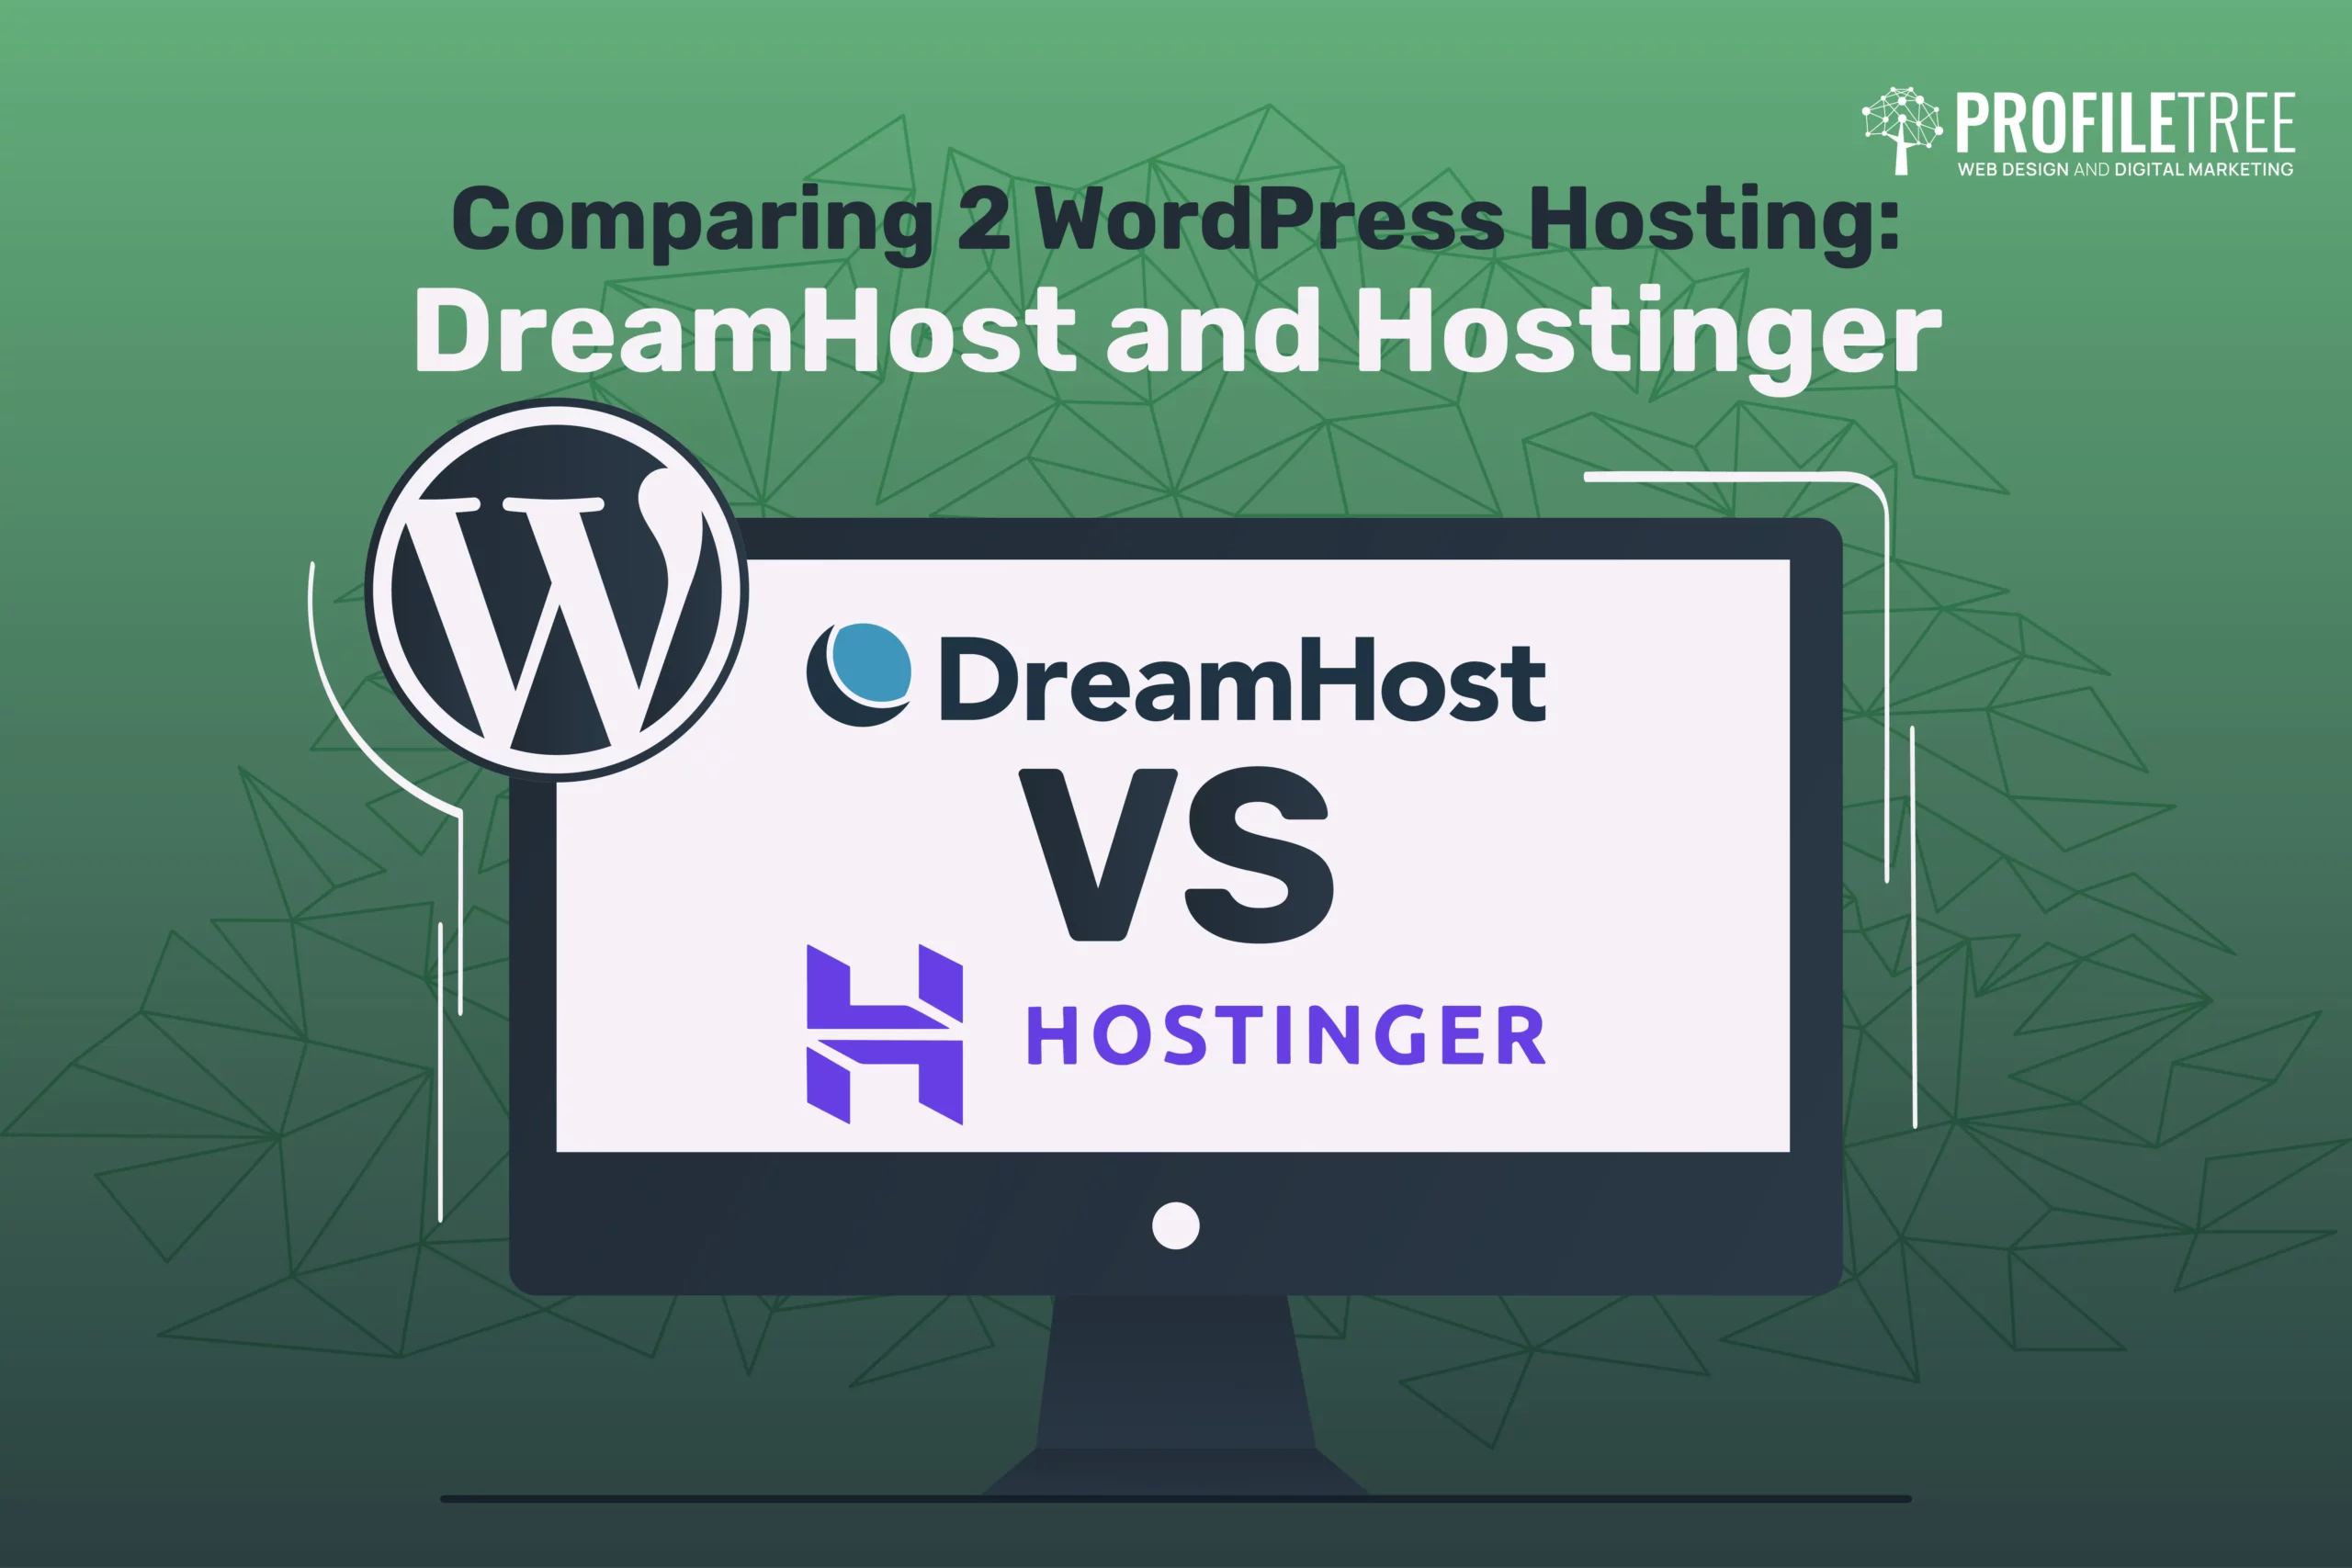 WordPress Hosting: DreamHost and Hostinger